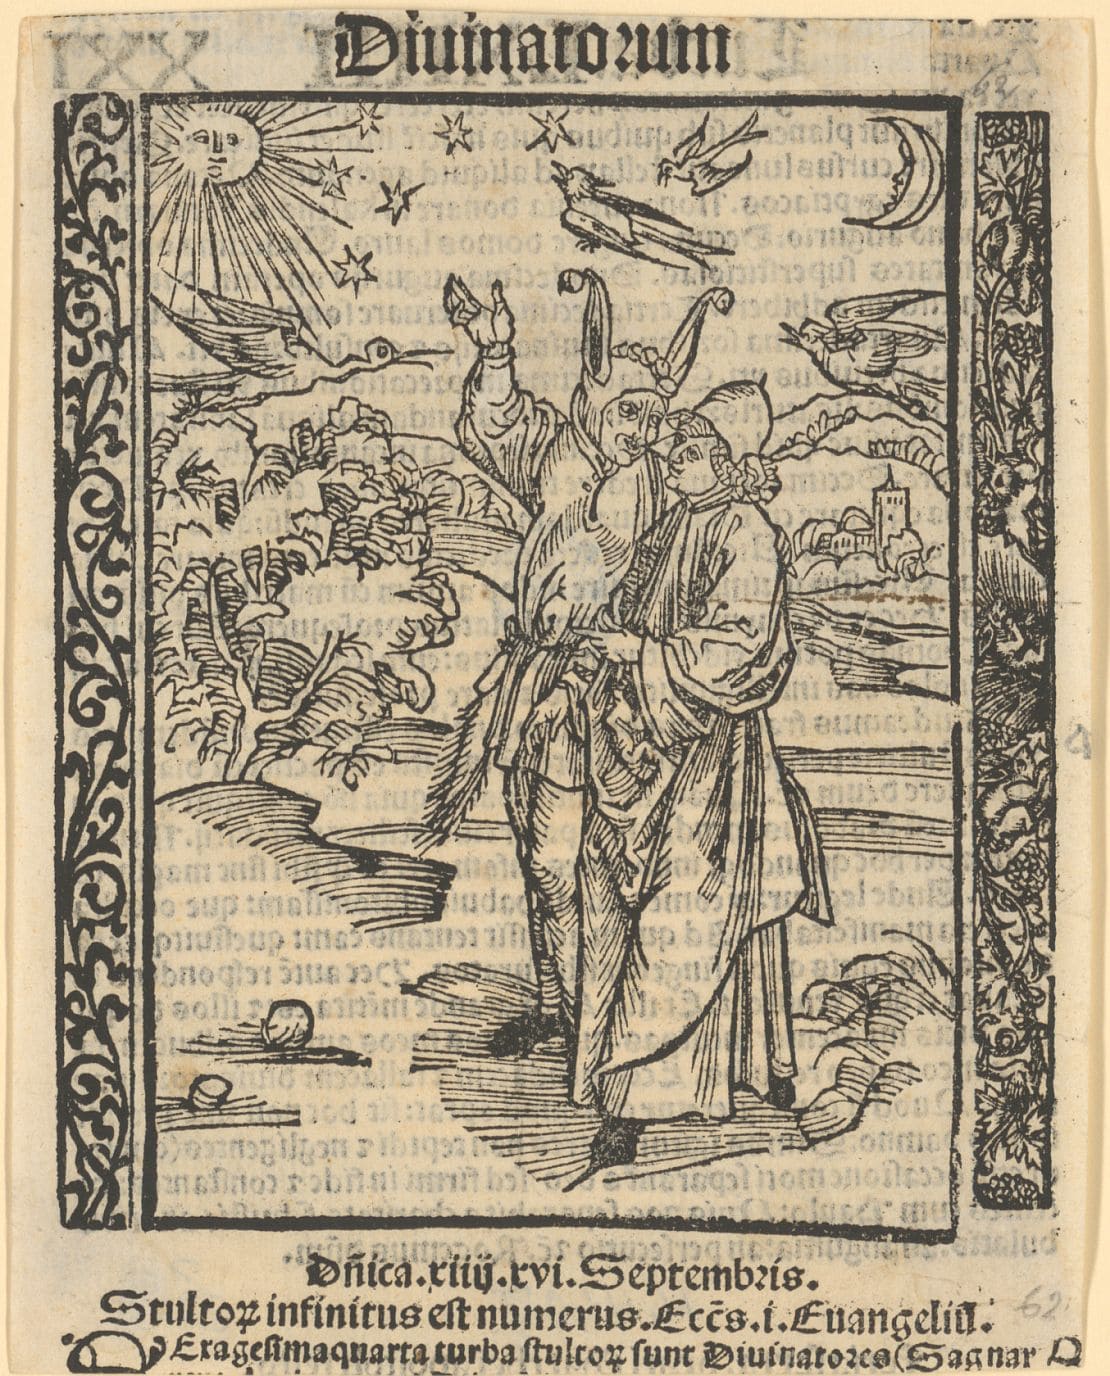 Das Narrenschiff, Kapitel 65: Von achtung des gstirns / Von Astrologie und anderem Aberglauben, 1494 (dt. Urausgabe), 1511 (Druck), (Scan: Ute Bock)